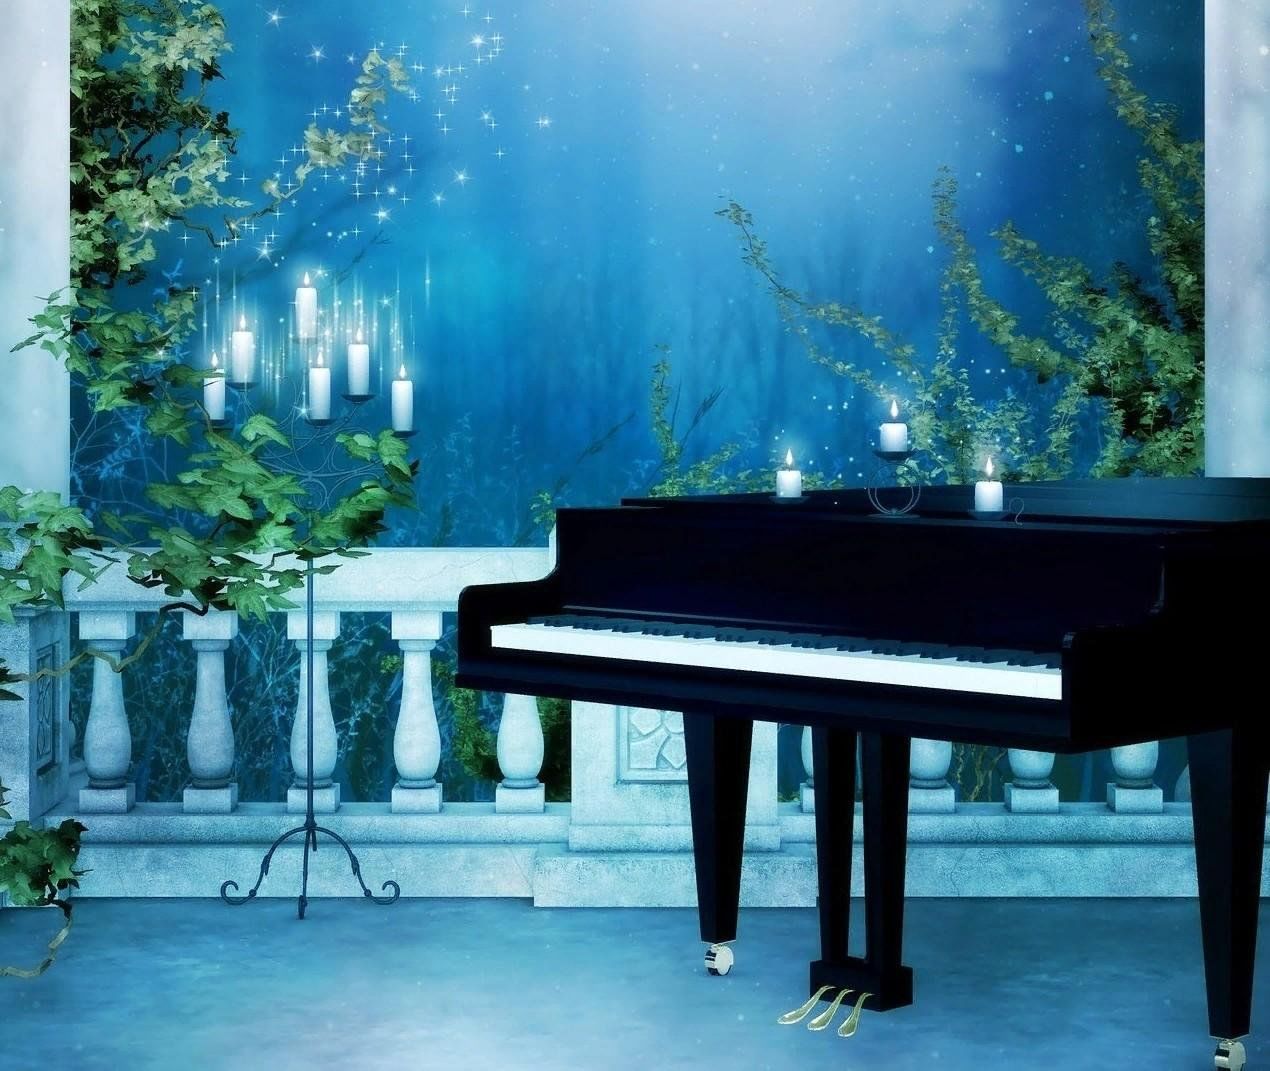 Времена года фортепиано слушать. Вечер фортепианной музыки. Луна и рояль картинки красивые. Pianino mp3. Музыка пианино красивая без слов.